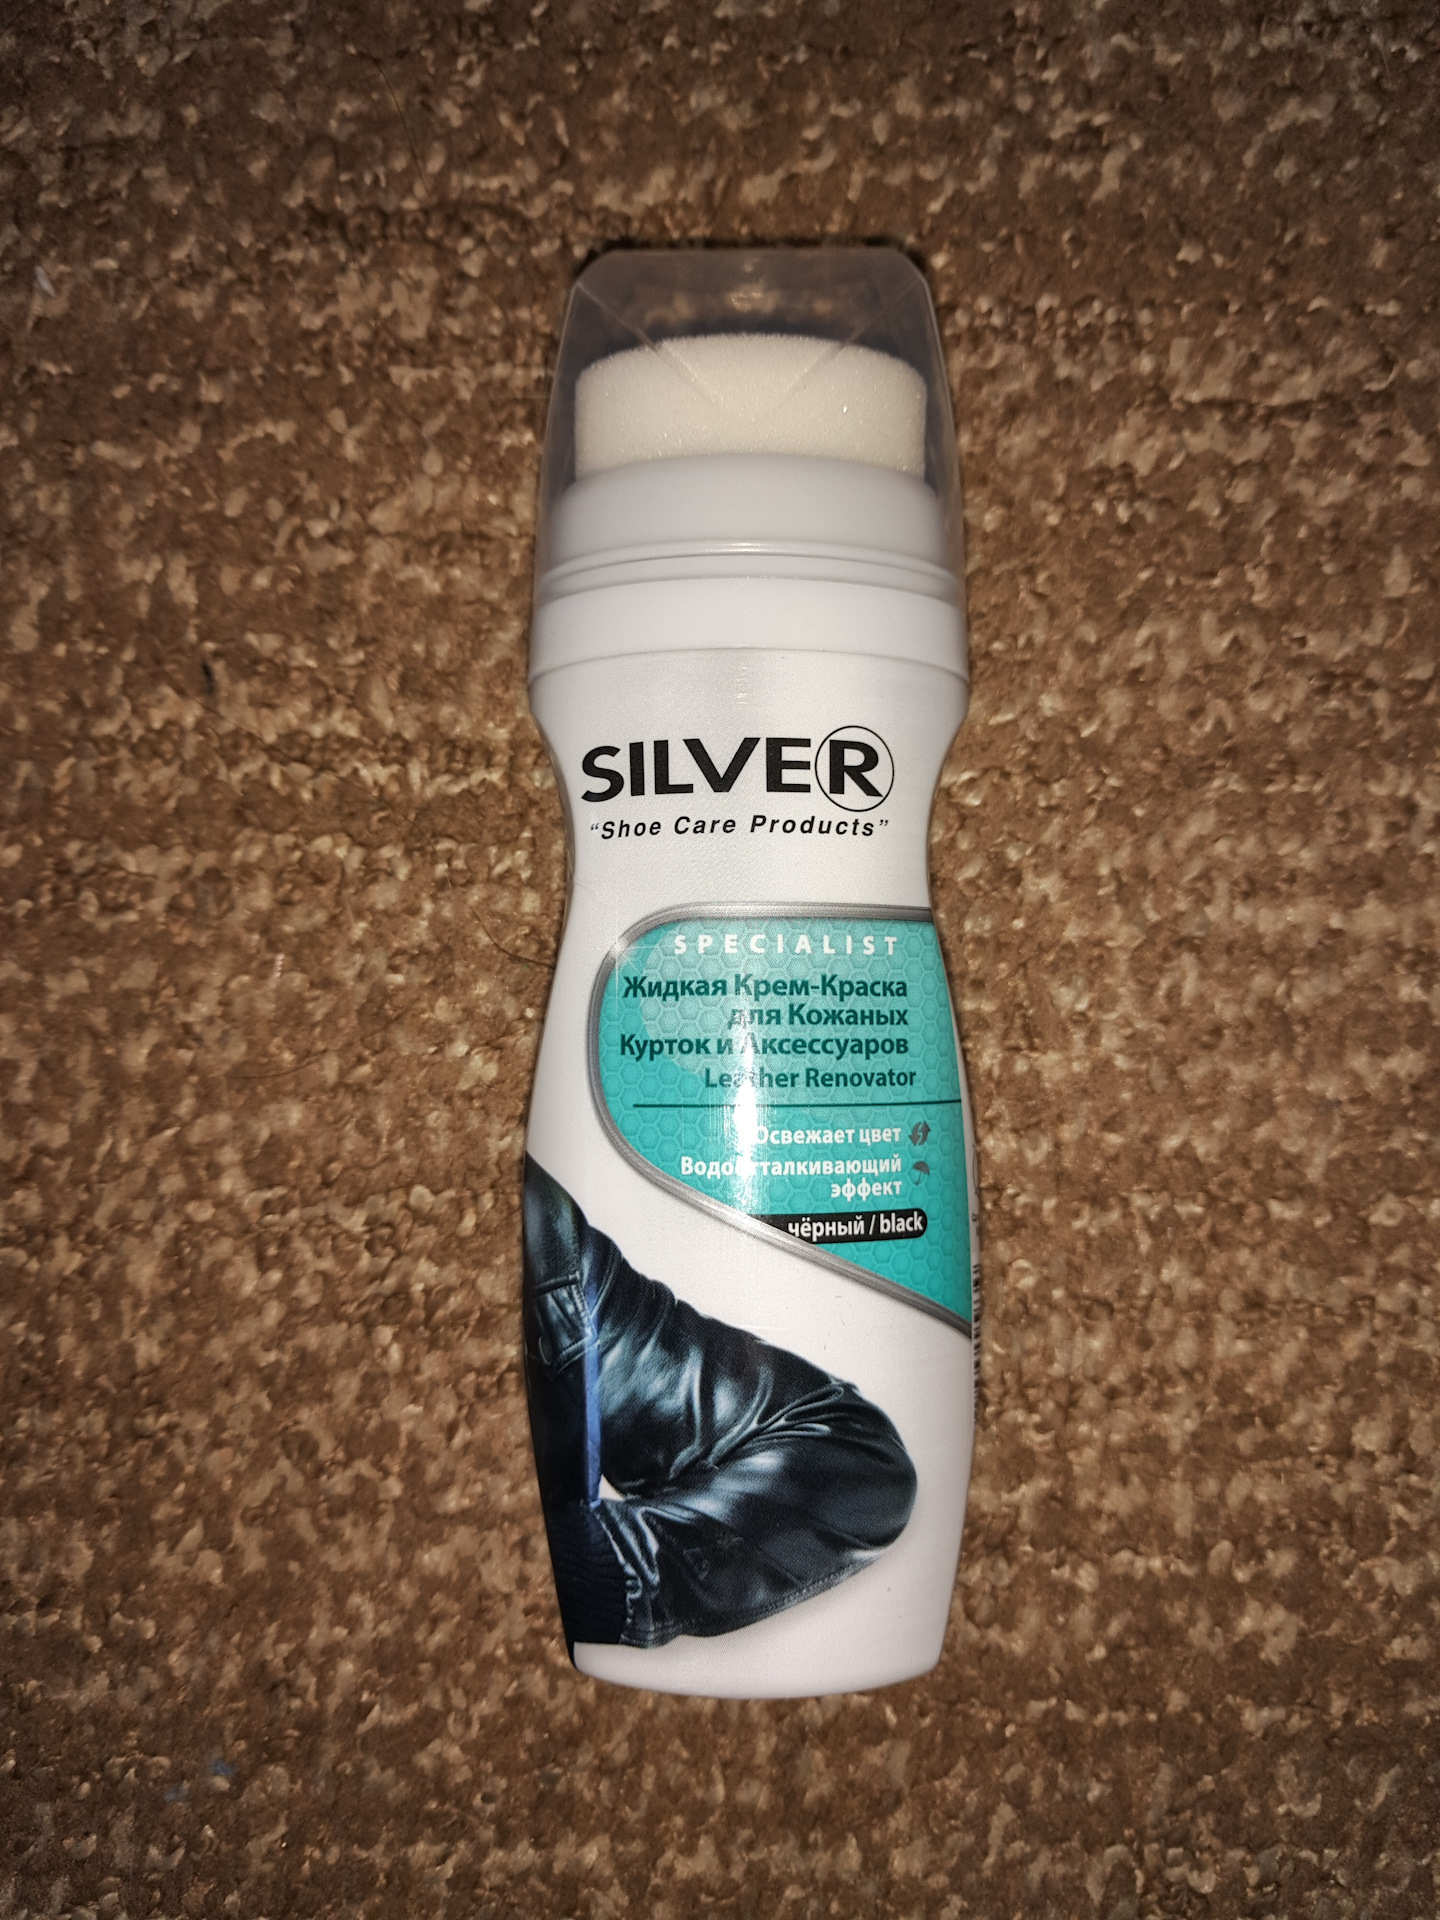 Silver Shoe Care products жидкая крем-краска для кожаных курток и аксессуаров